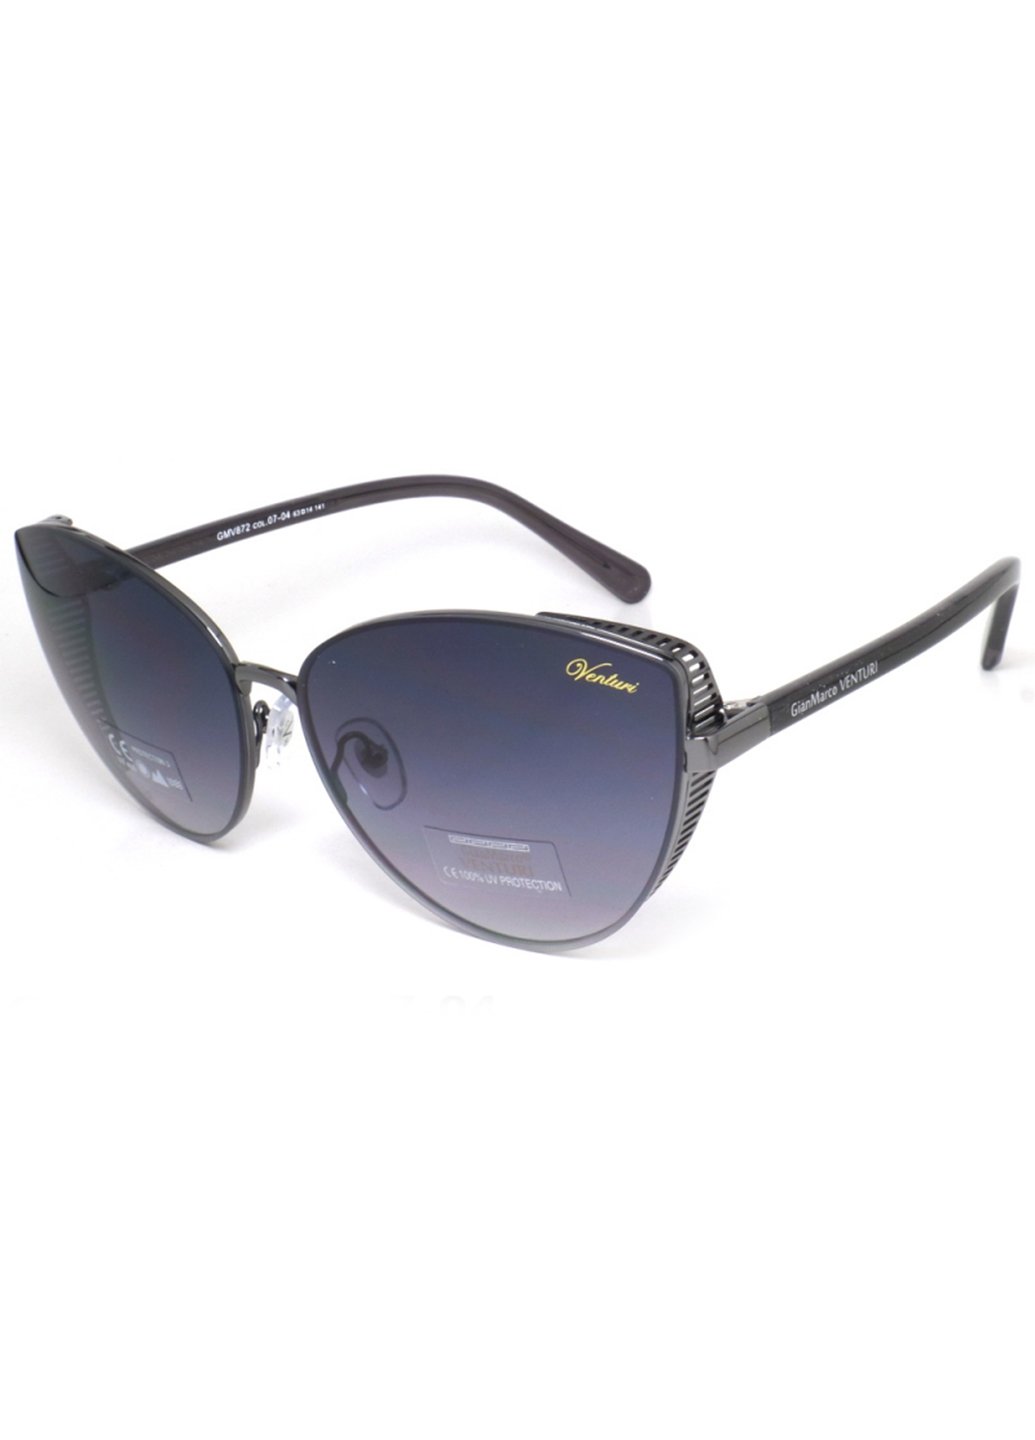 Купить Женские солнцезащитные очки Gian Marco VENTURI GMV872 130006 - Синий в интернет-магазине